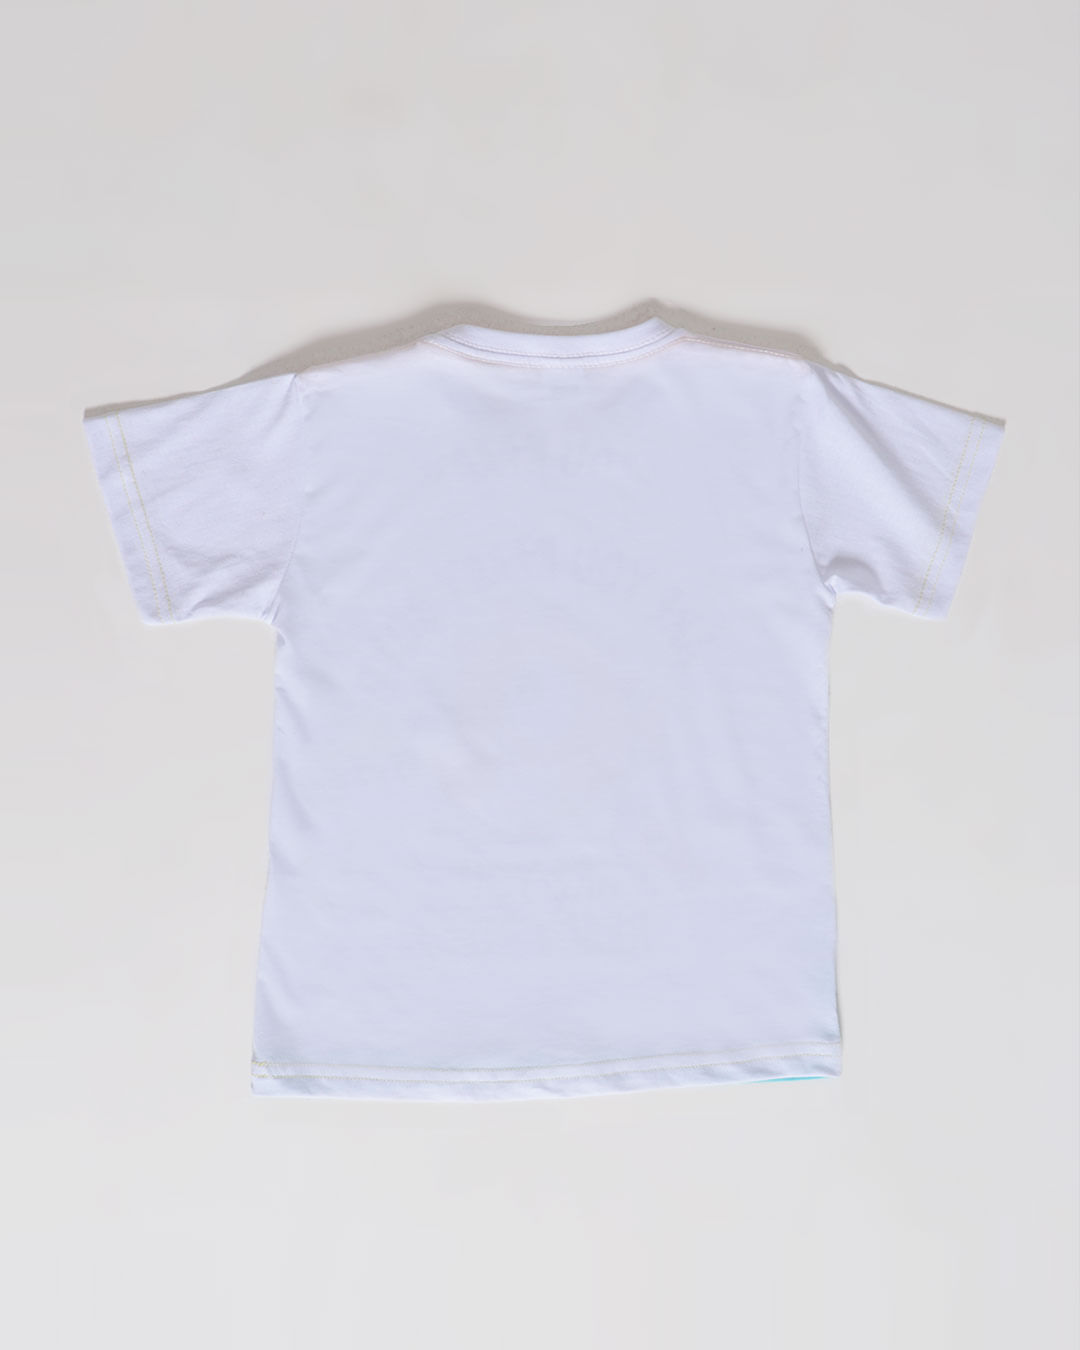 Camiseta Bebê Manga Curta Peixinho Degradê Branca